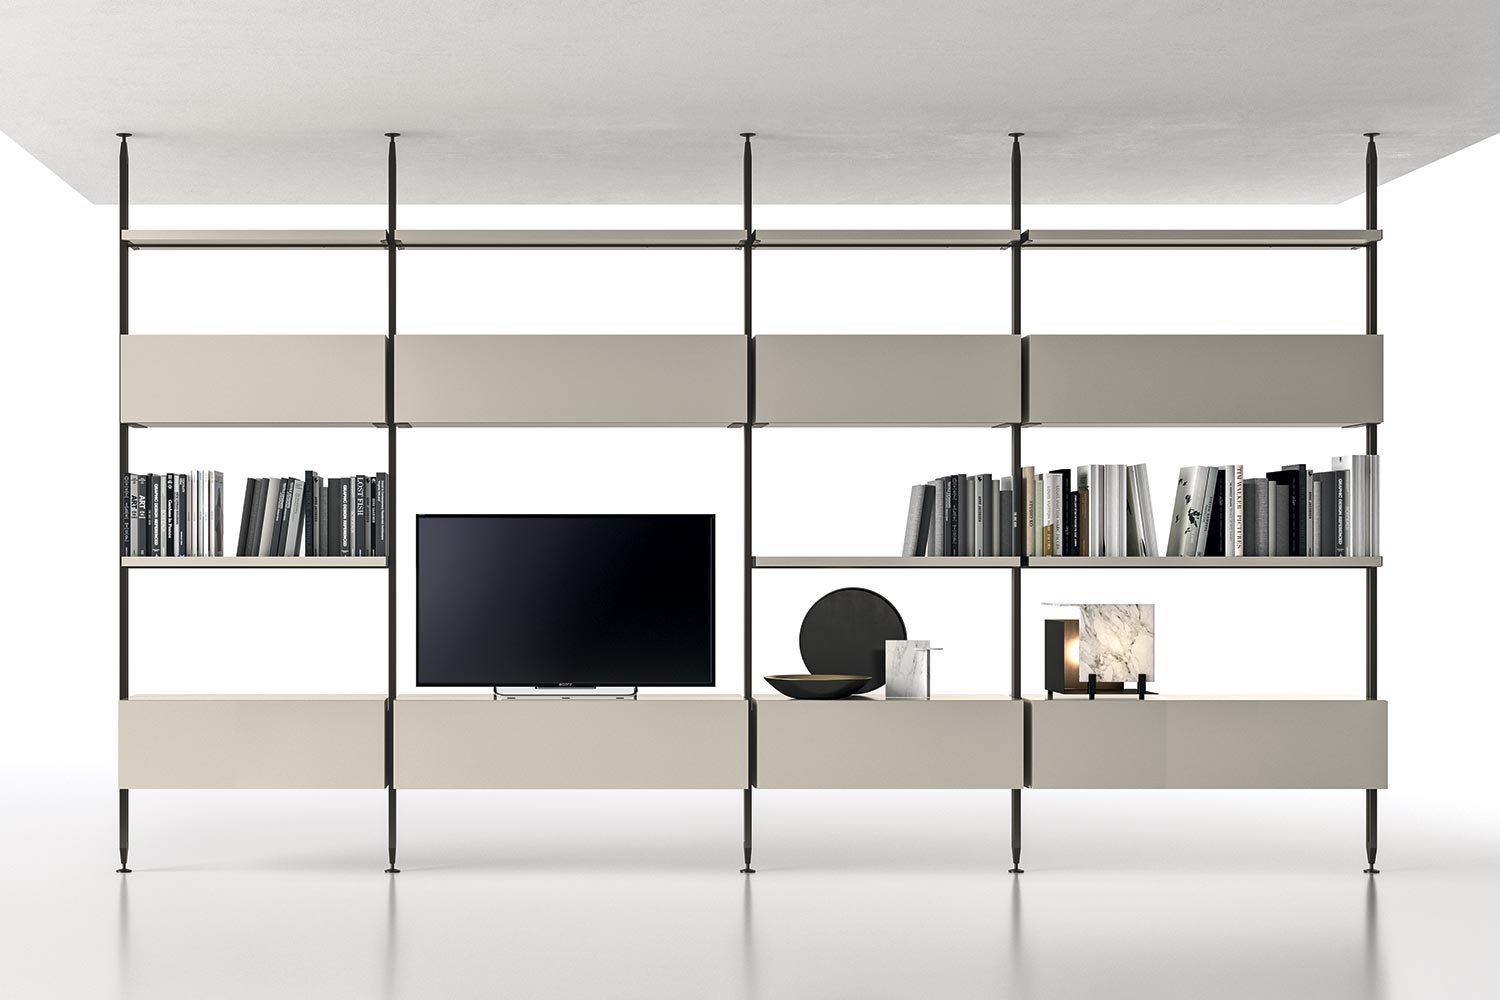 Libreria a soffitto bifacciale componibile a pali con ripiani, cassetti e porta tv